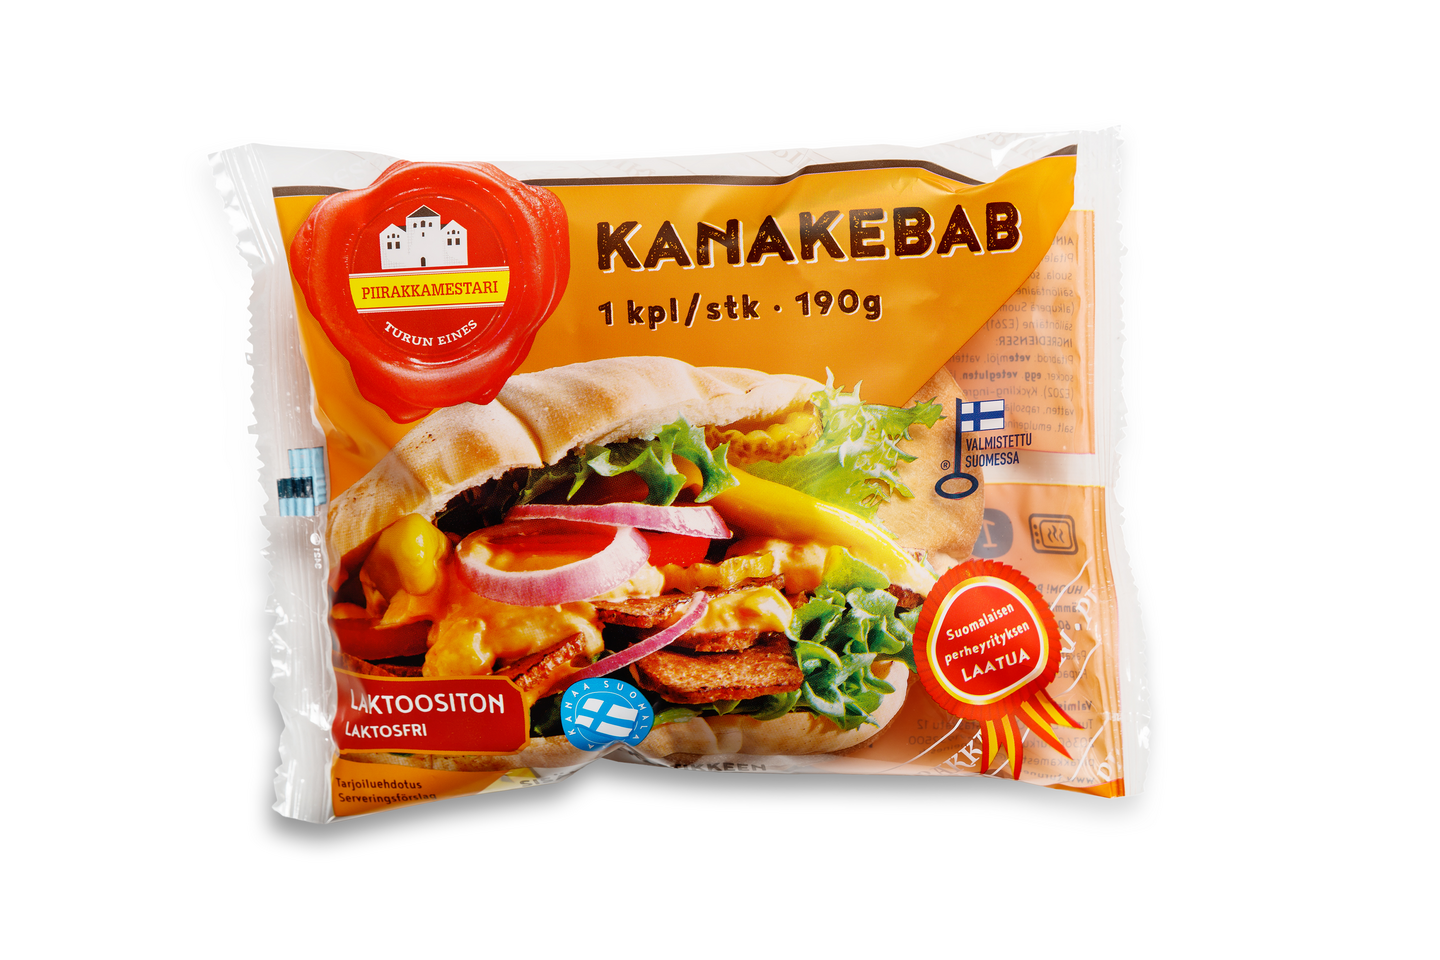 Turun Eines kana-kebab 190g